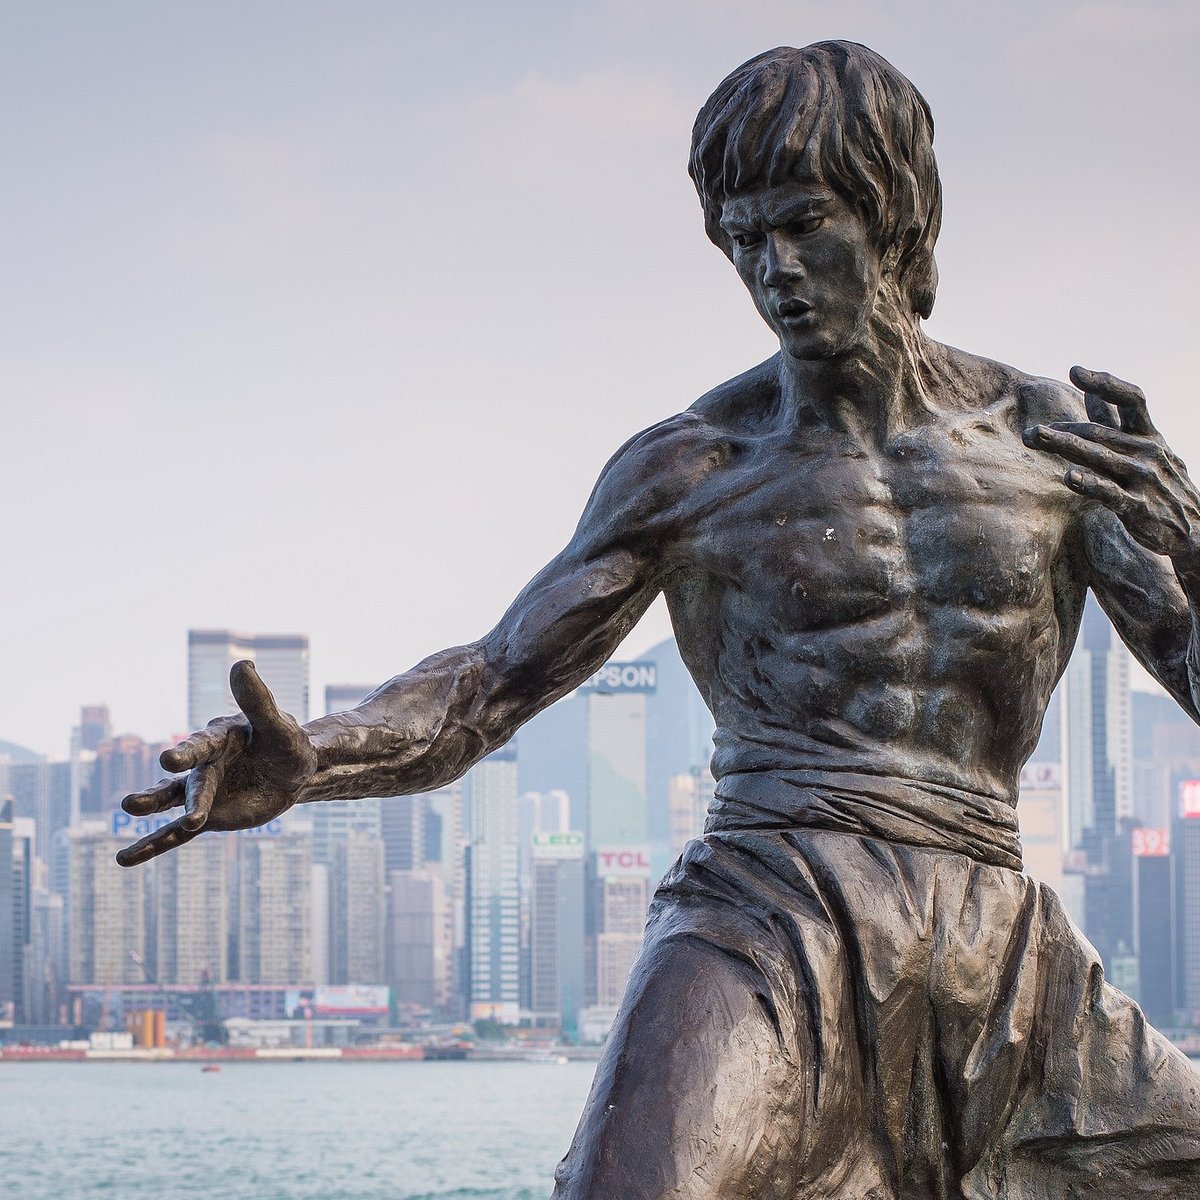 Bruce Lee Statue (Hồng Kông, Trung Quốc) - Đánh giá - Tripadvisor